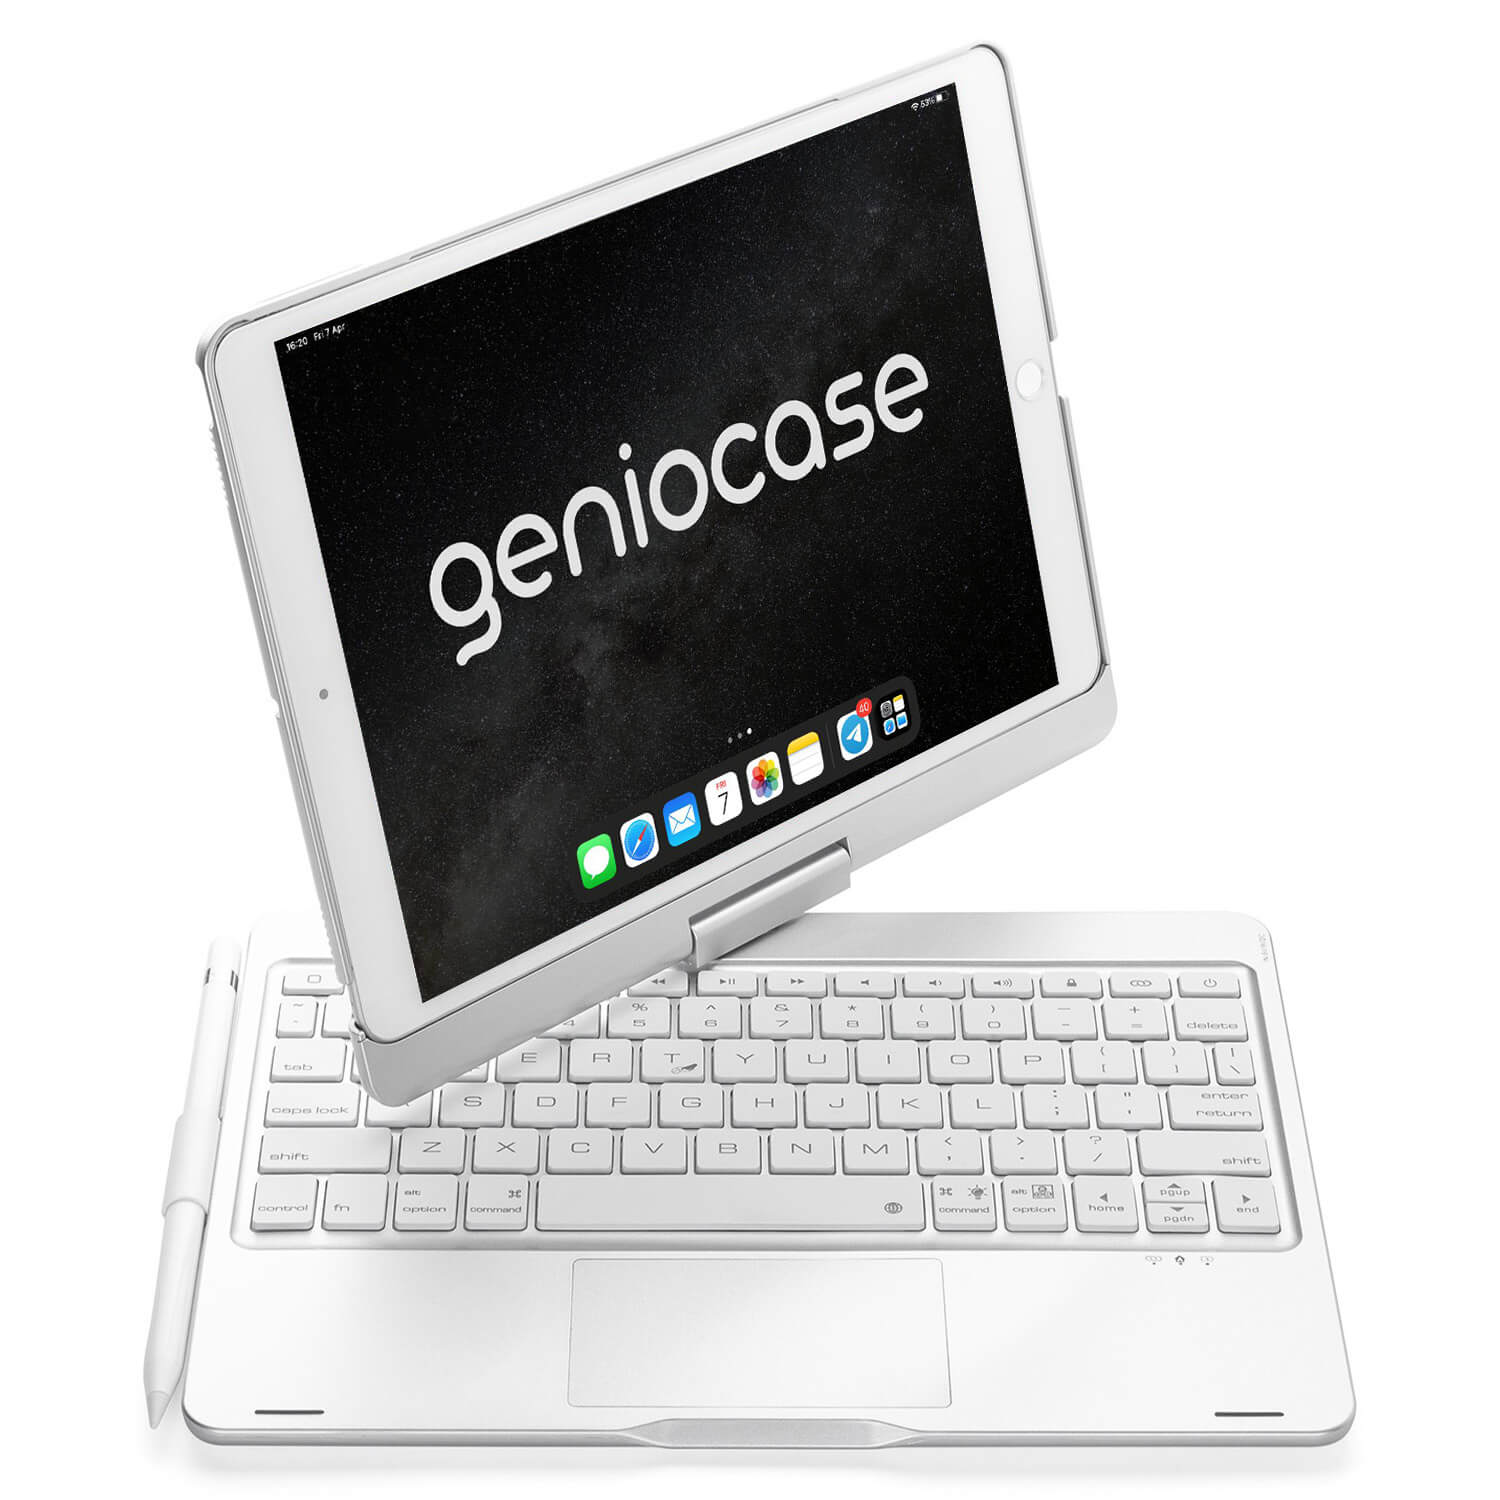 Geniocase® Carbon for iPad